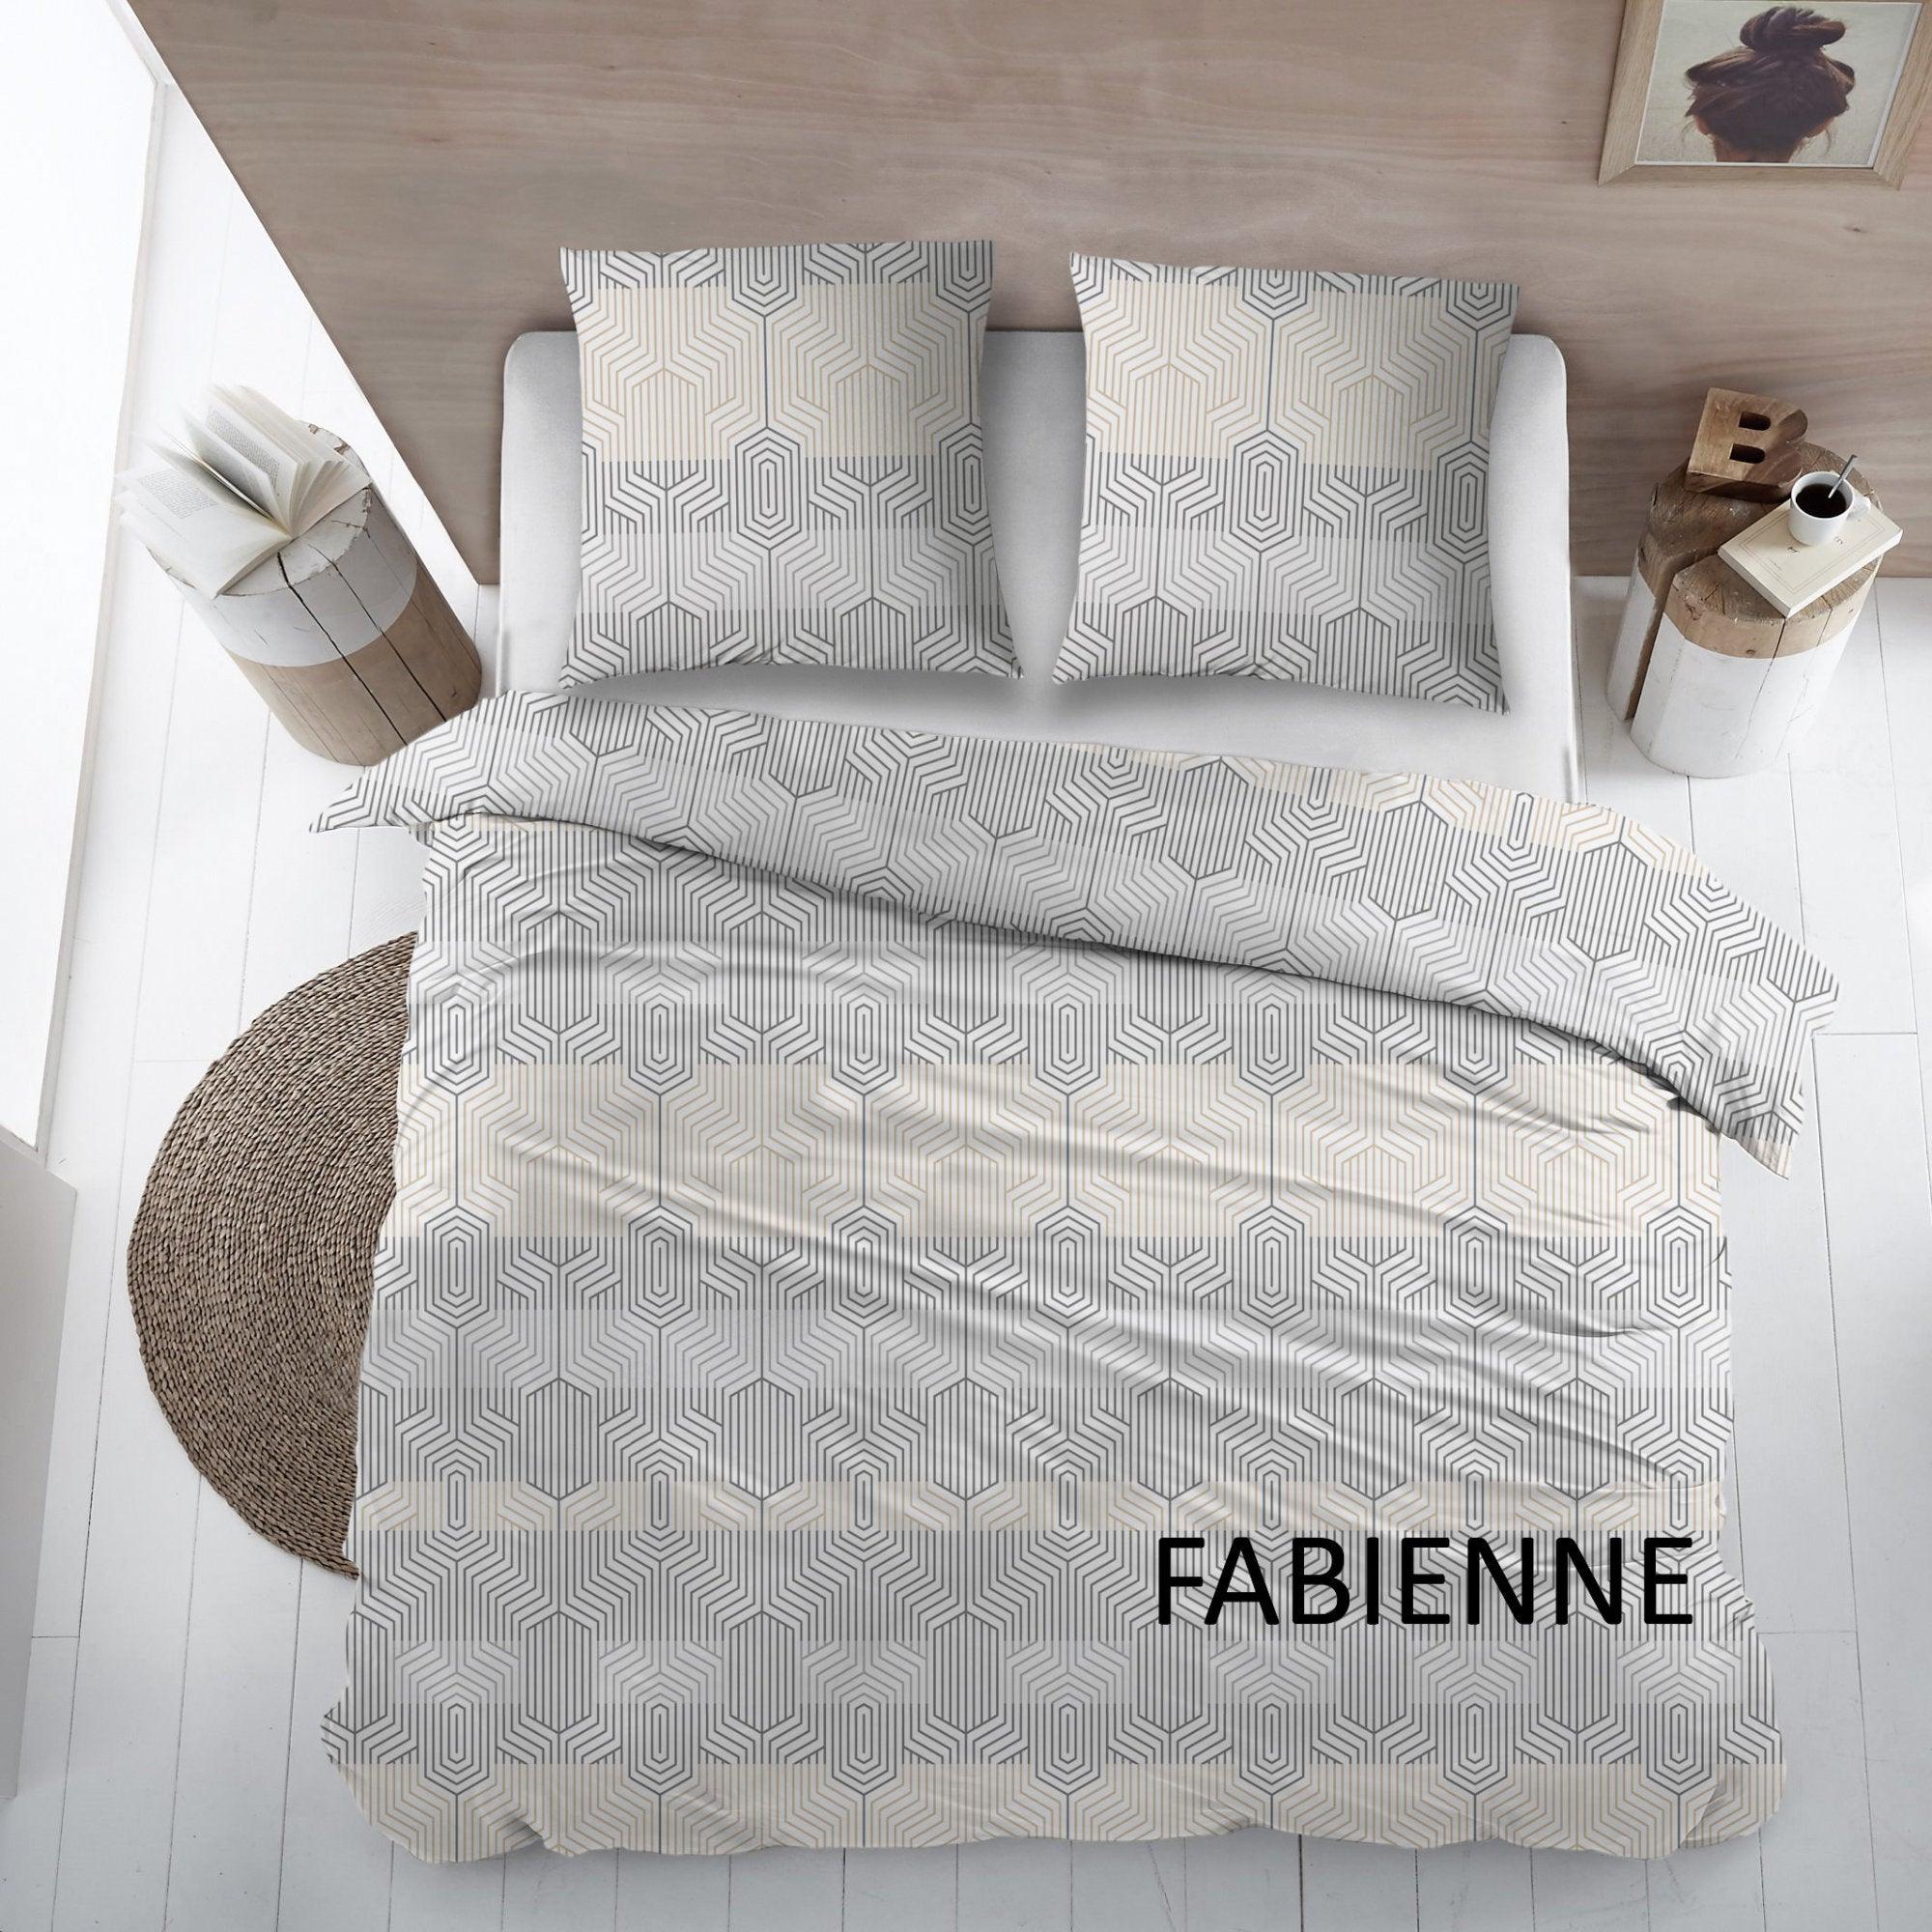 Cottons Fabienne Flanell-Bettlaken-Set